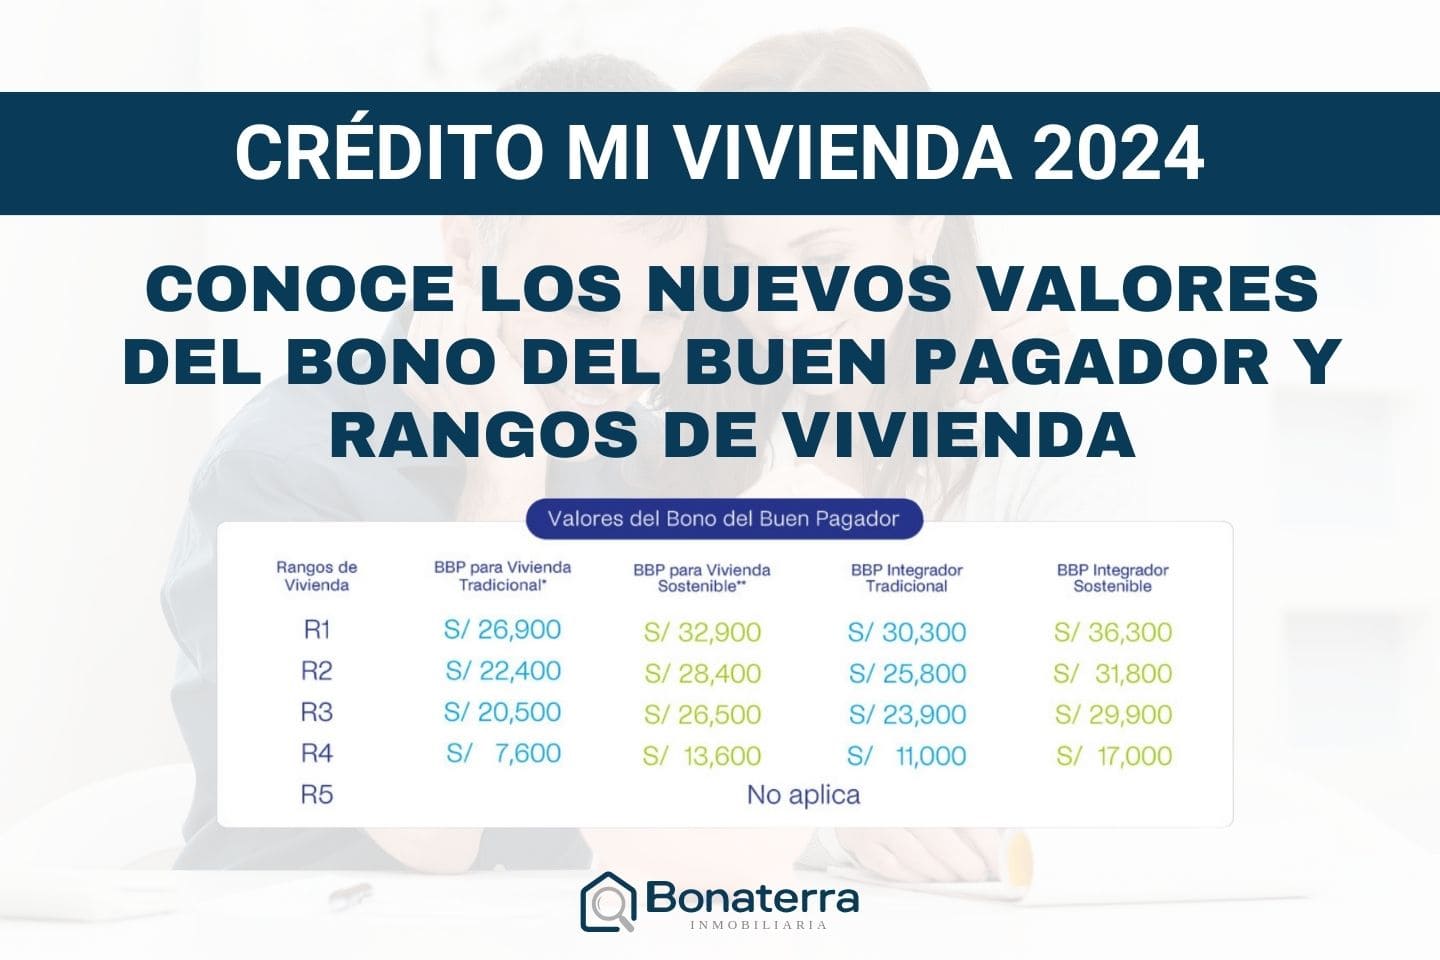 Crédito Mivivienda, Bono Del Buen Pagador Y Rangos De Vivienda 2024